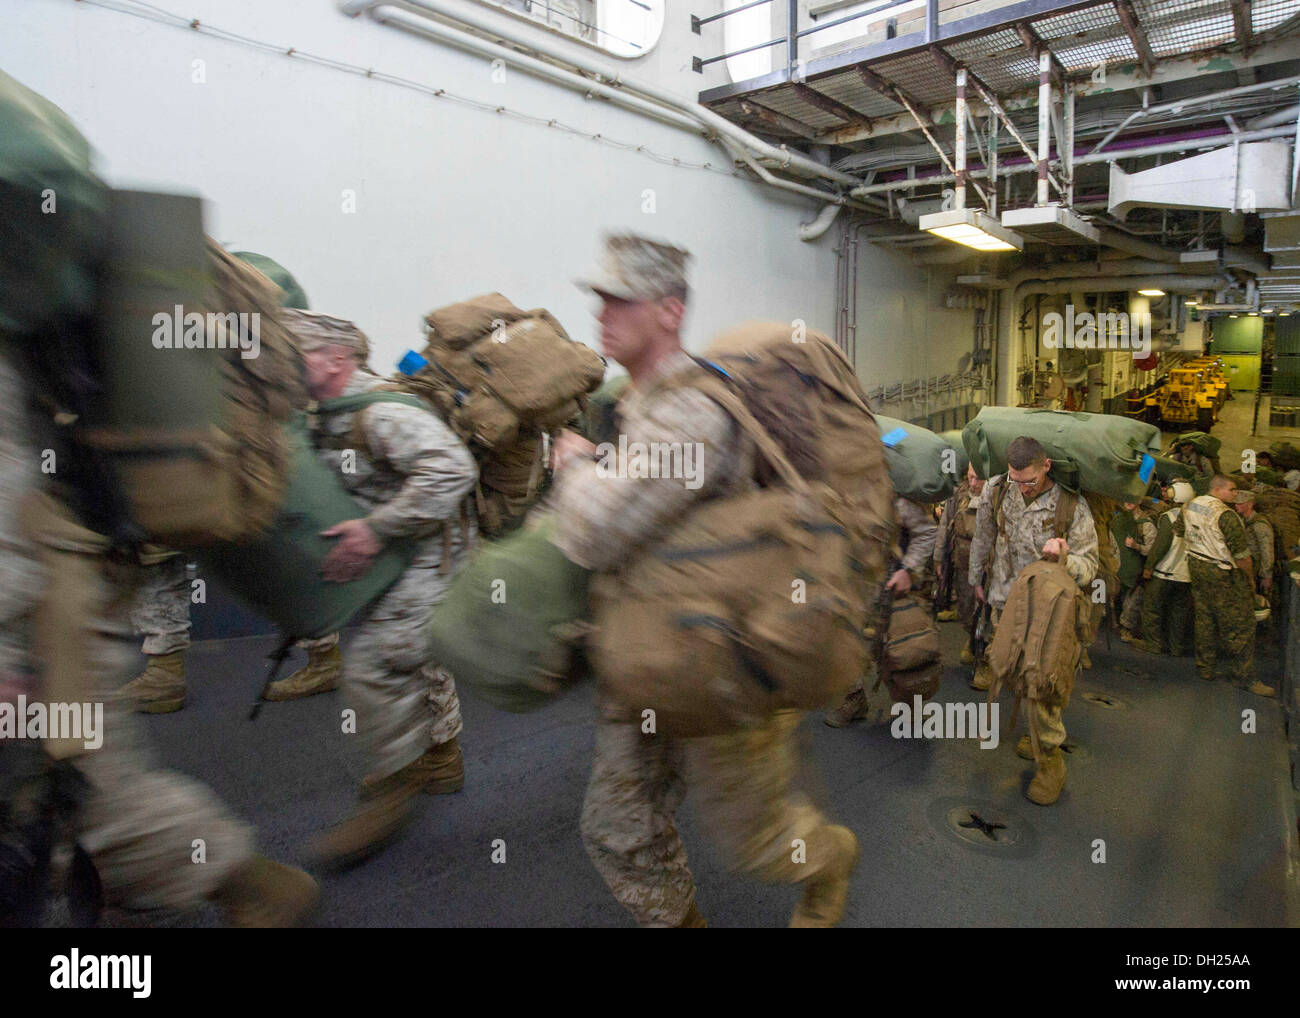 Oceano atlantico, (ott. 24, 2013) --Marines arrivano in ben coperta della multipurpose Amphibious Assault nave USS Bataan (LHD 5). Bataan marinai e ventiduesima Marine Expeditionary Unit Marines sono in corso di conduzione delle qualifiche di routine. Foto Stock